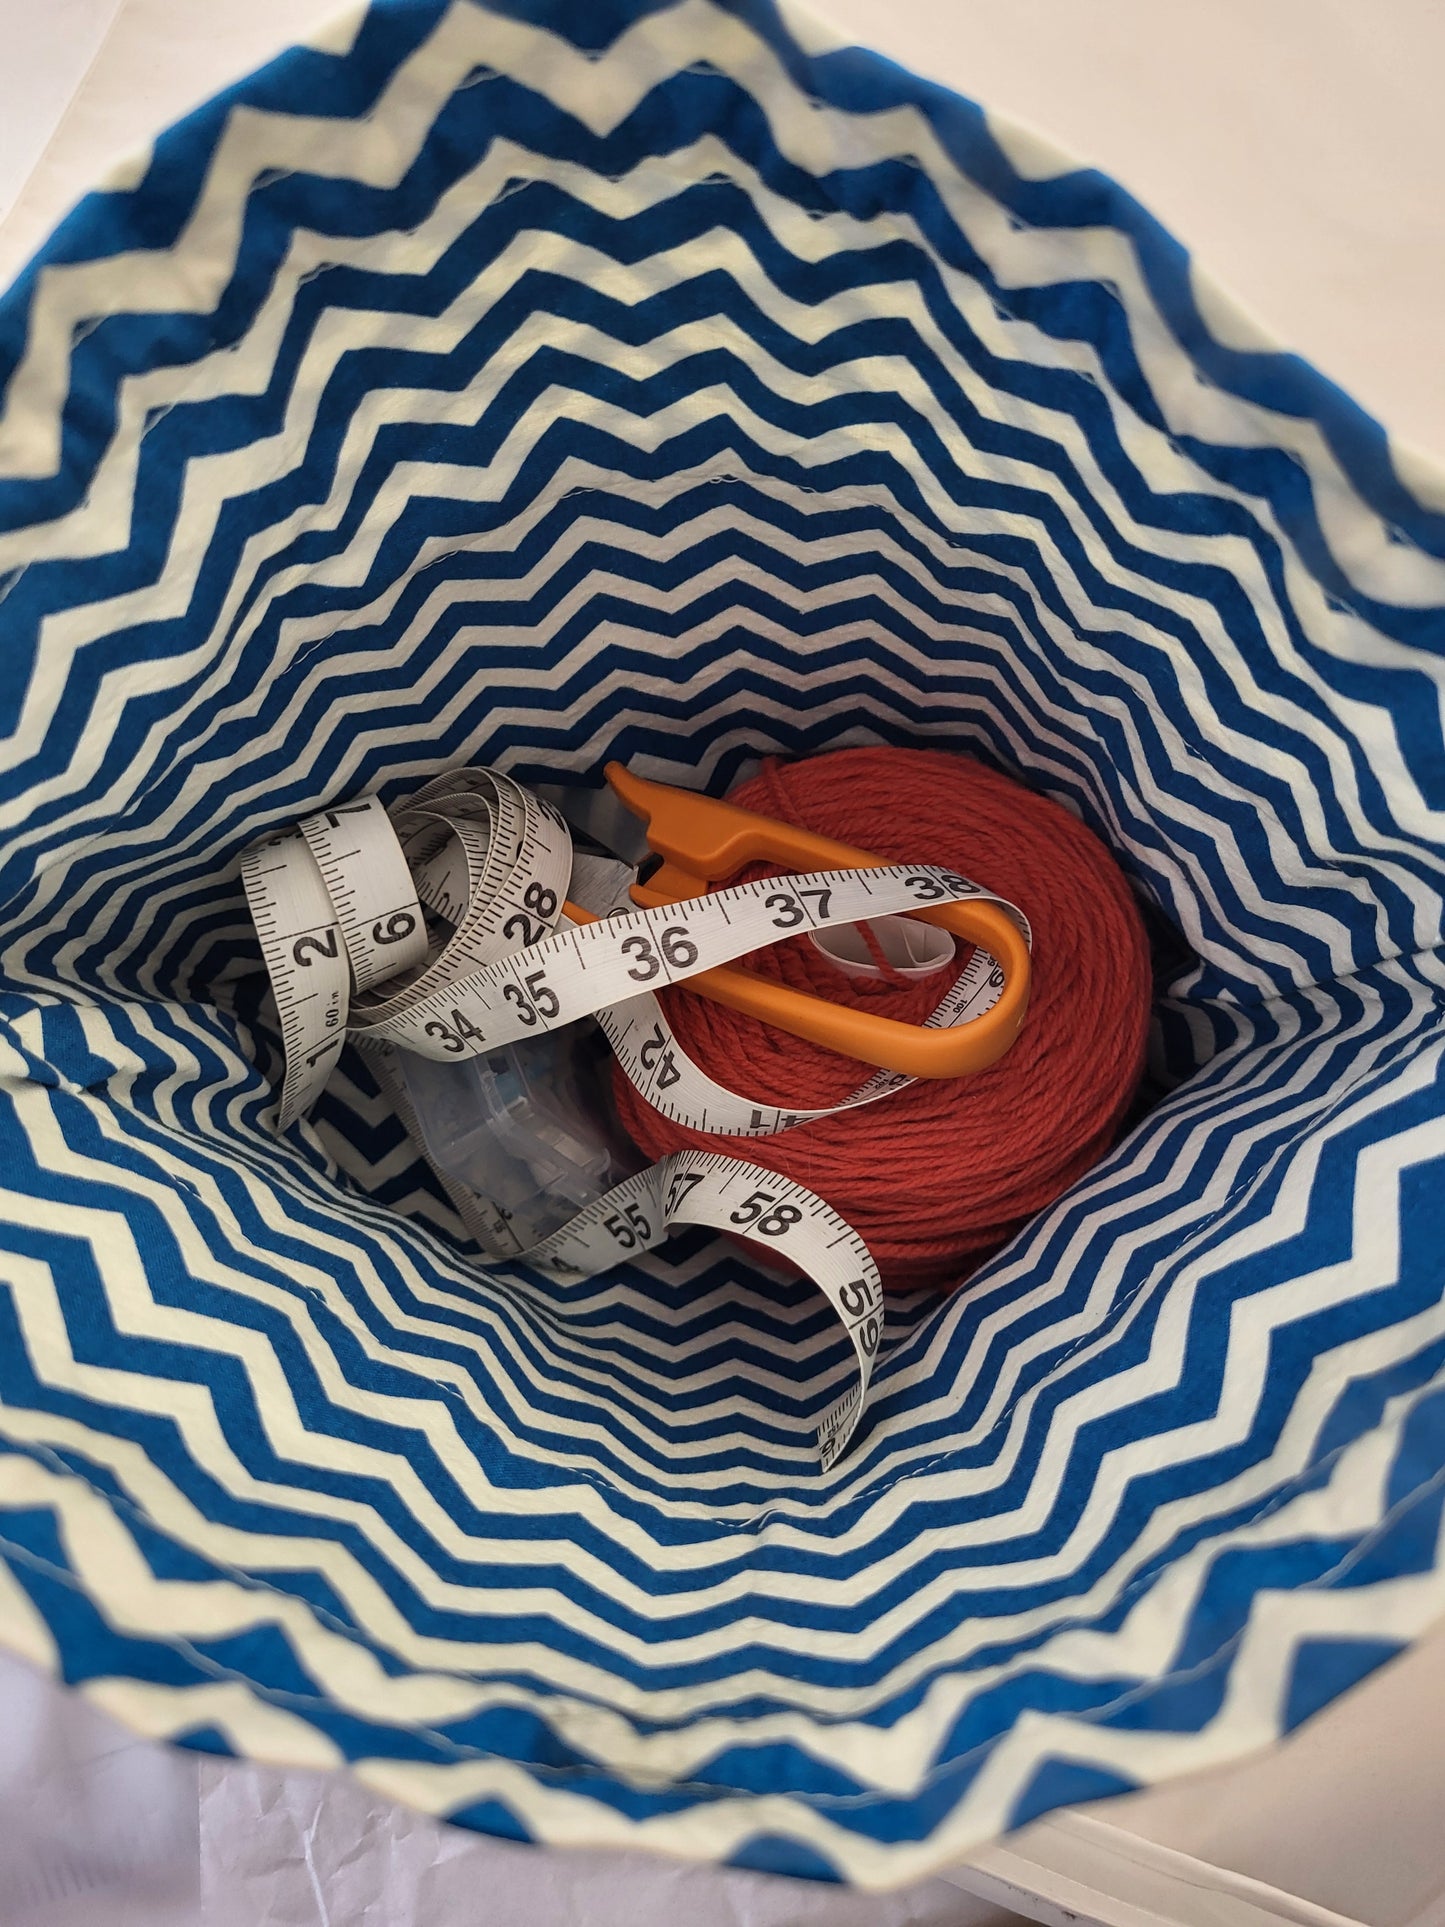 Scrappy drawstring Sock Sack, Drawstring bag, small project bag, small storage bag